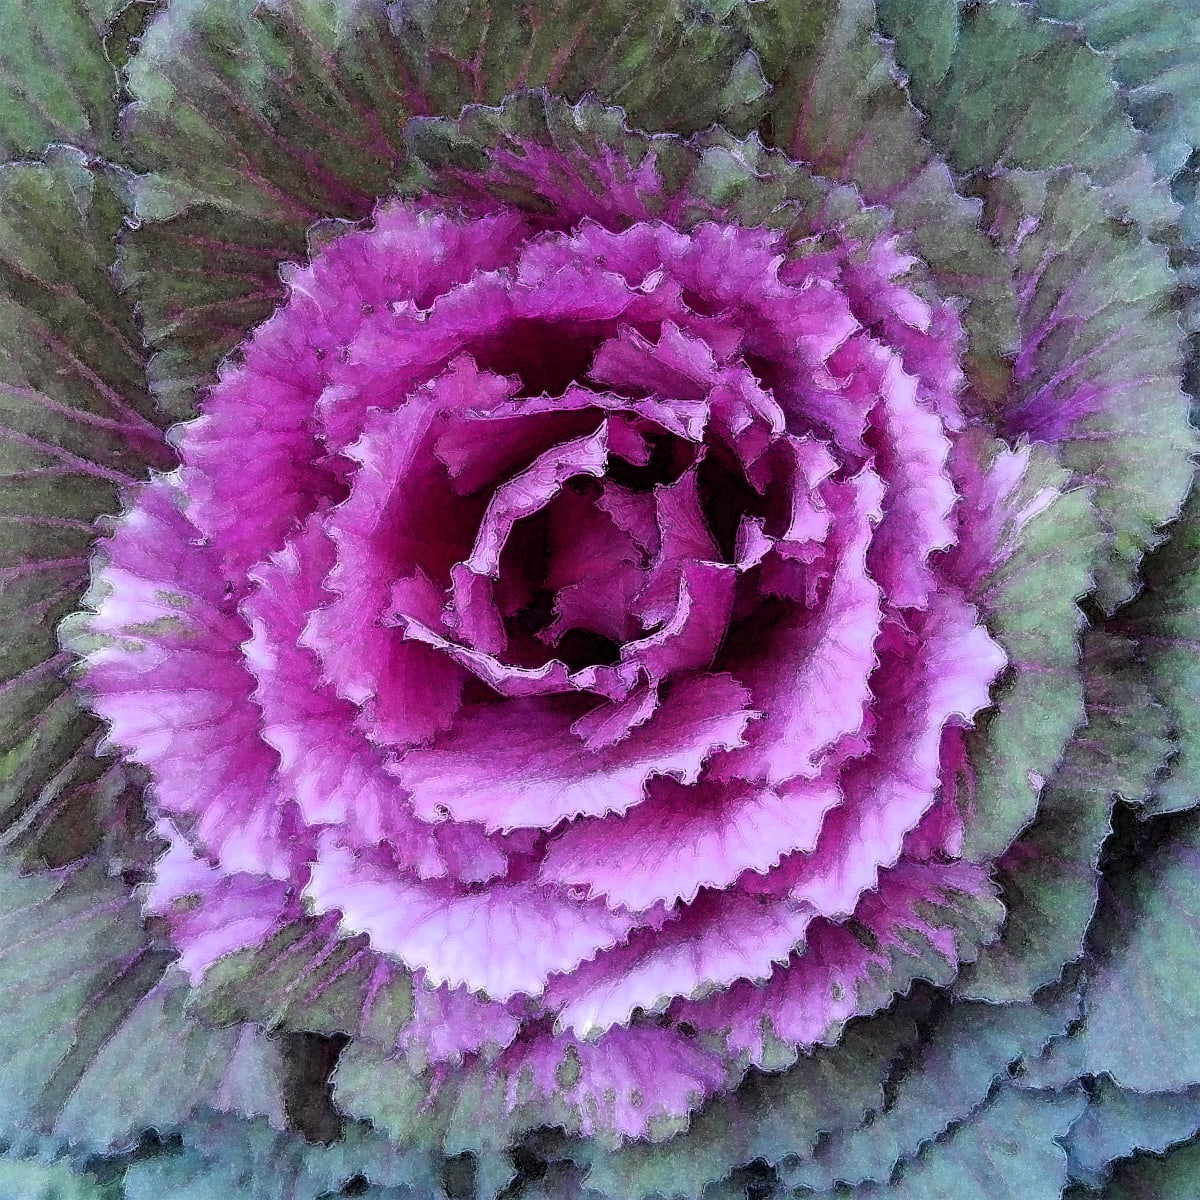 Fuchsia Cabbage 3 by Ellen Gaube  Image: Fuchsia Cabbage 3